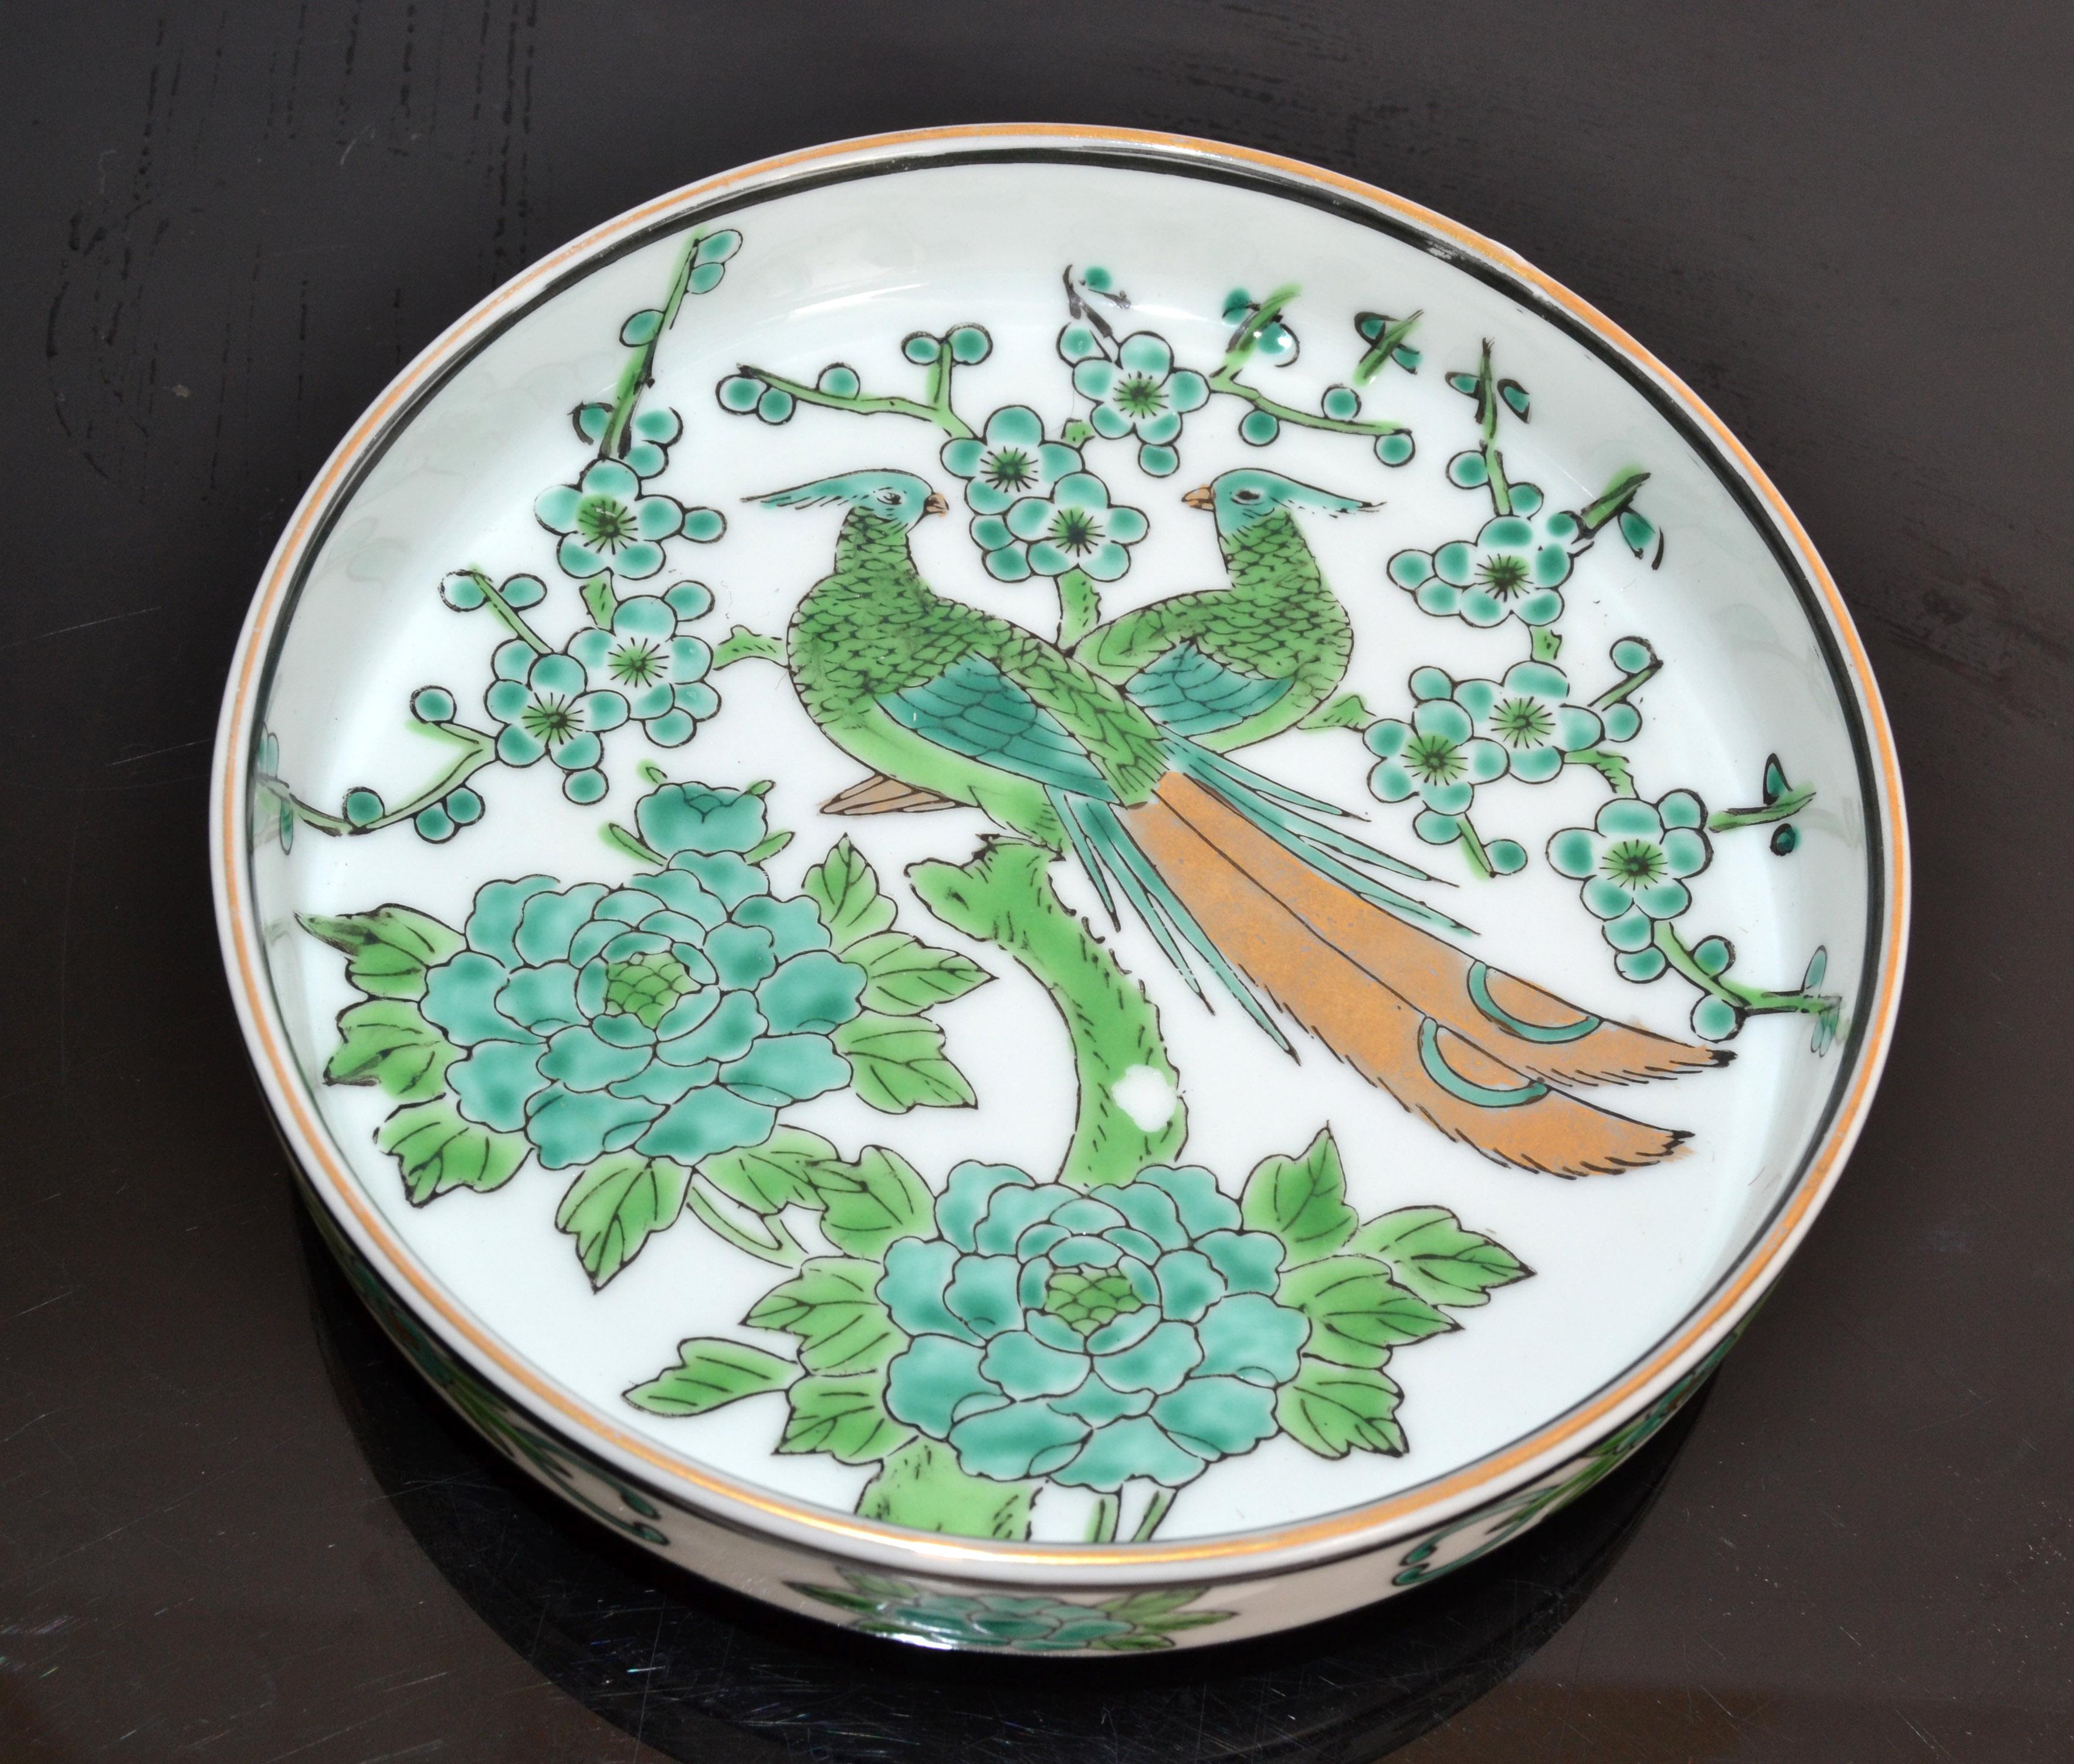 Dies ist eine schöne circa 1960 Mid-Century Modern Gold Imari markiert Porzellan handbemalt grün, Blattgold und weiß Schüssel, vide poche, Teller oder Schüssel.
Das Stück hat ein wunderschönes Pfauenmotiv mit Blattgoldakzenten. 
Auf der Unterseite